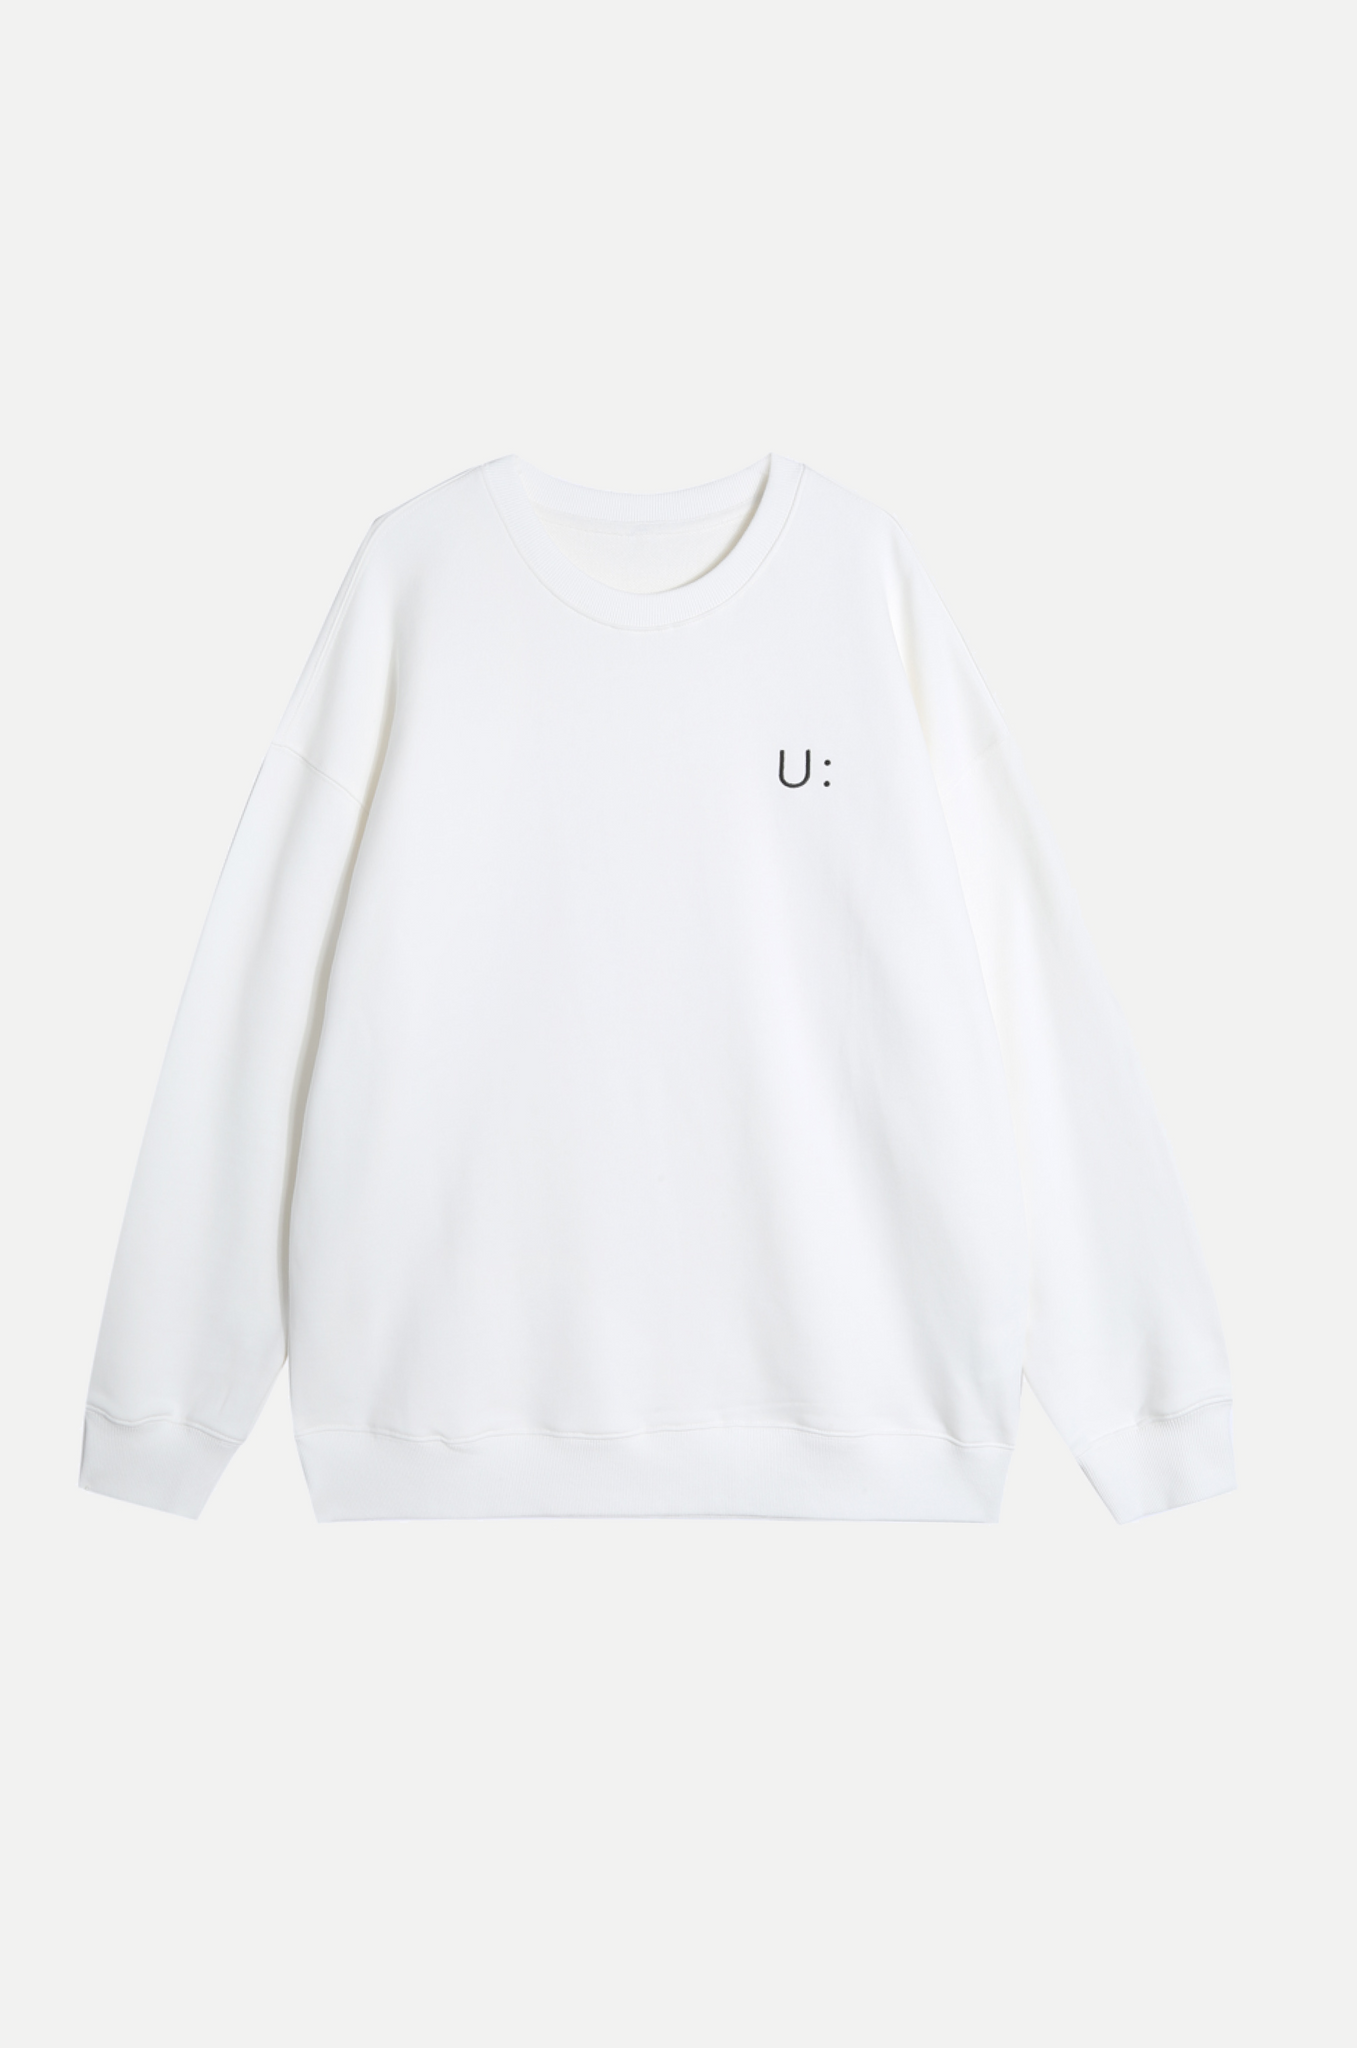 Pre-Order / Motif U: Sweater